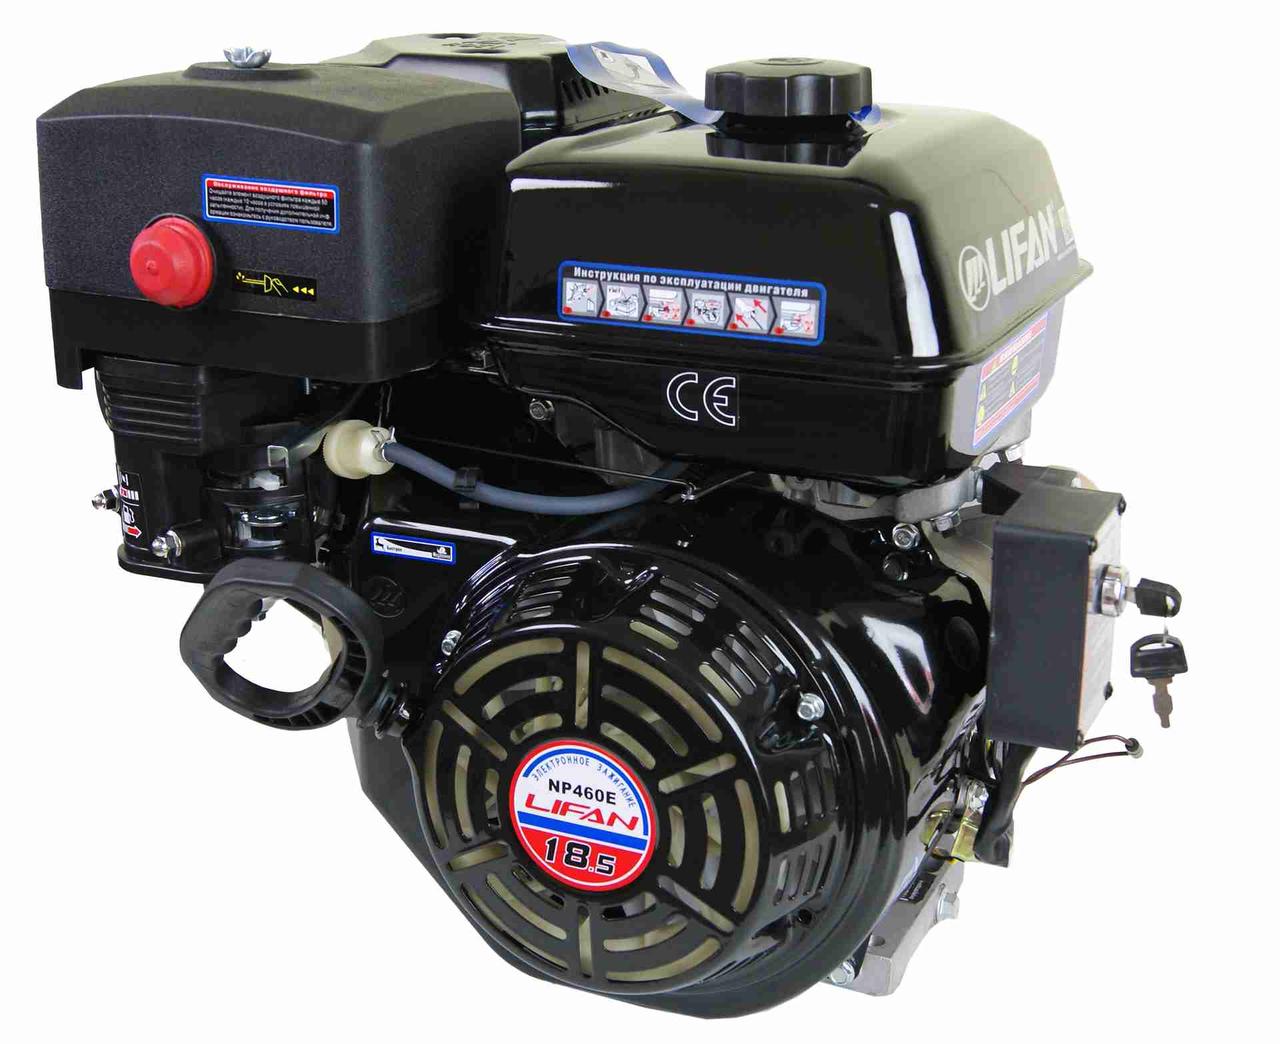 Двигатель LIFAN NP460E 11A (18.5 л.с., вал 25мм, эл. стартер, катушка 11А)